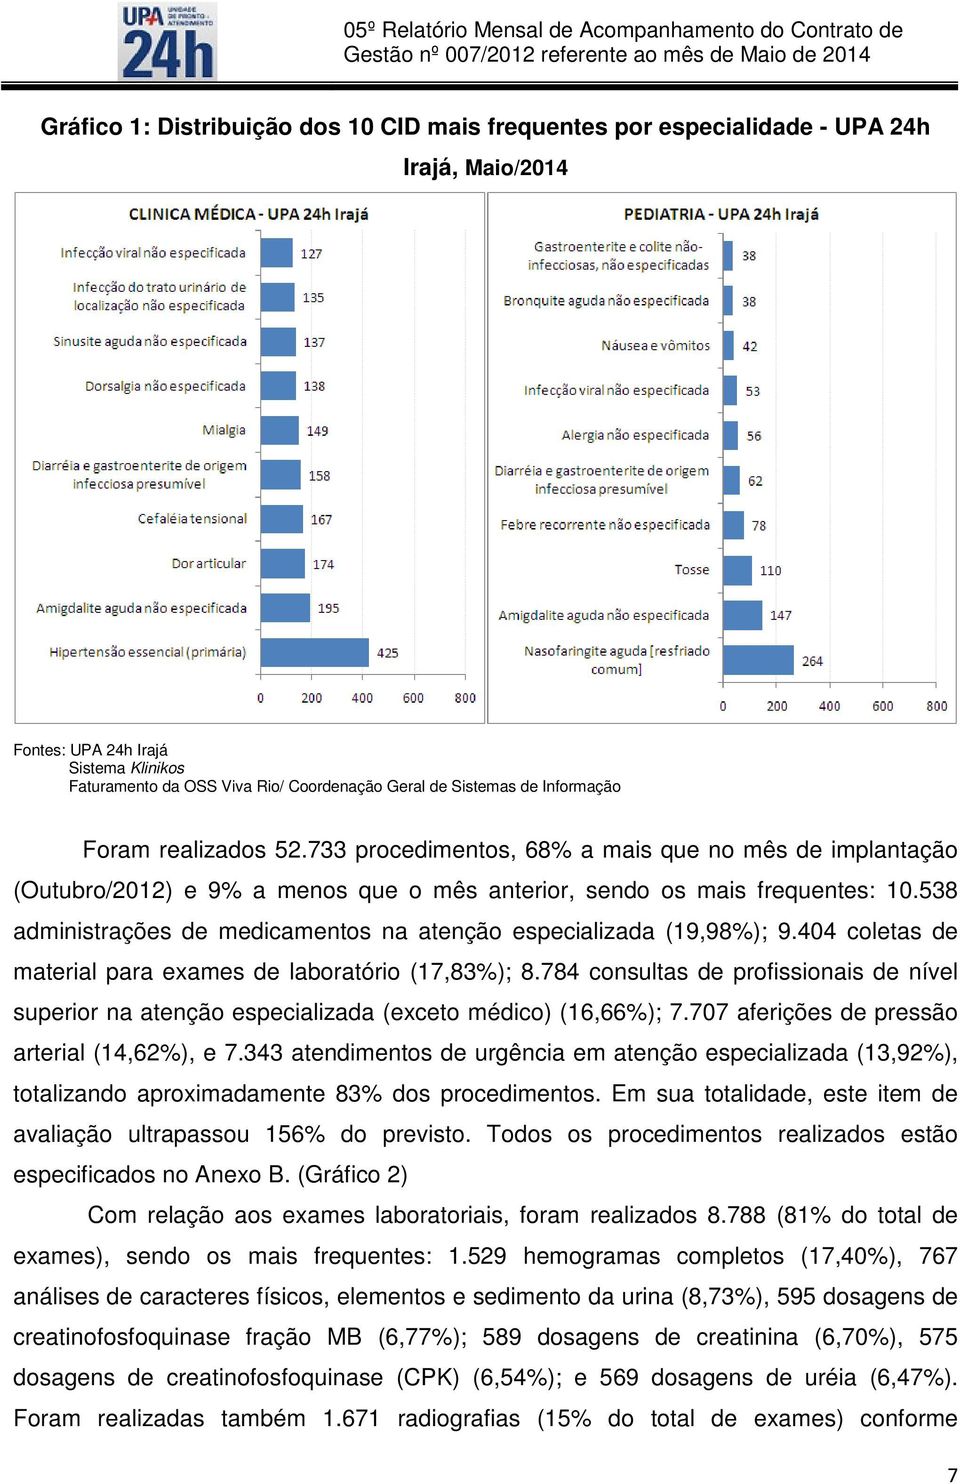 538 administrações de medicamentos na atenção especializada (19,98%); 9.404 coletas de material para exames de laboratório (17,83%); 8.